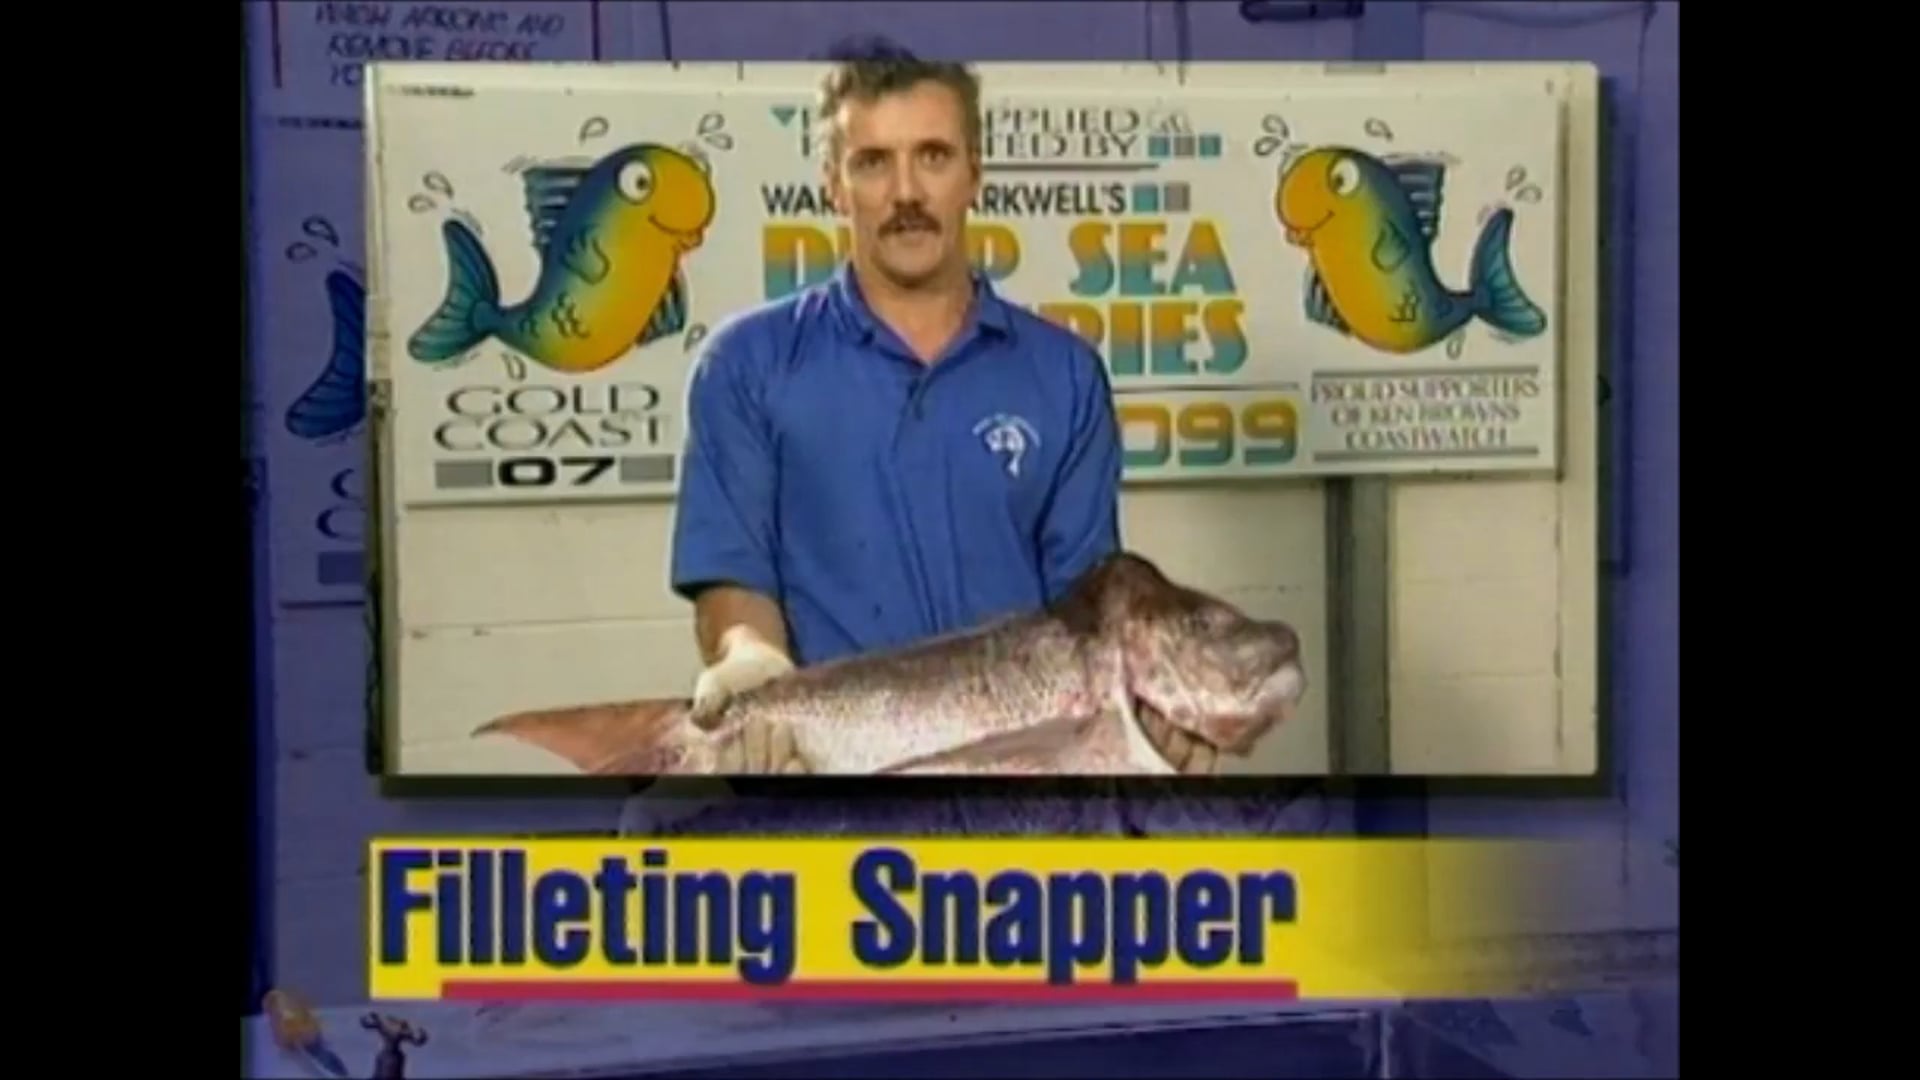 Filleting snapper – Steve Jamieson